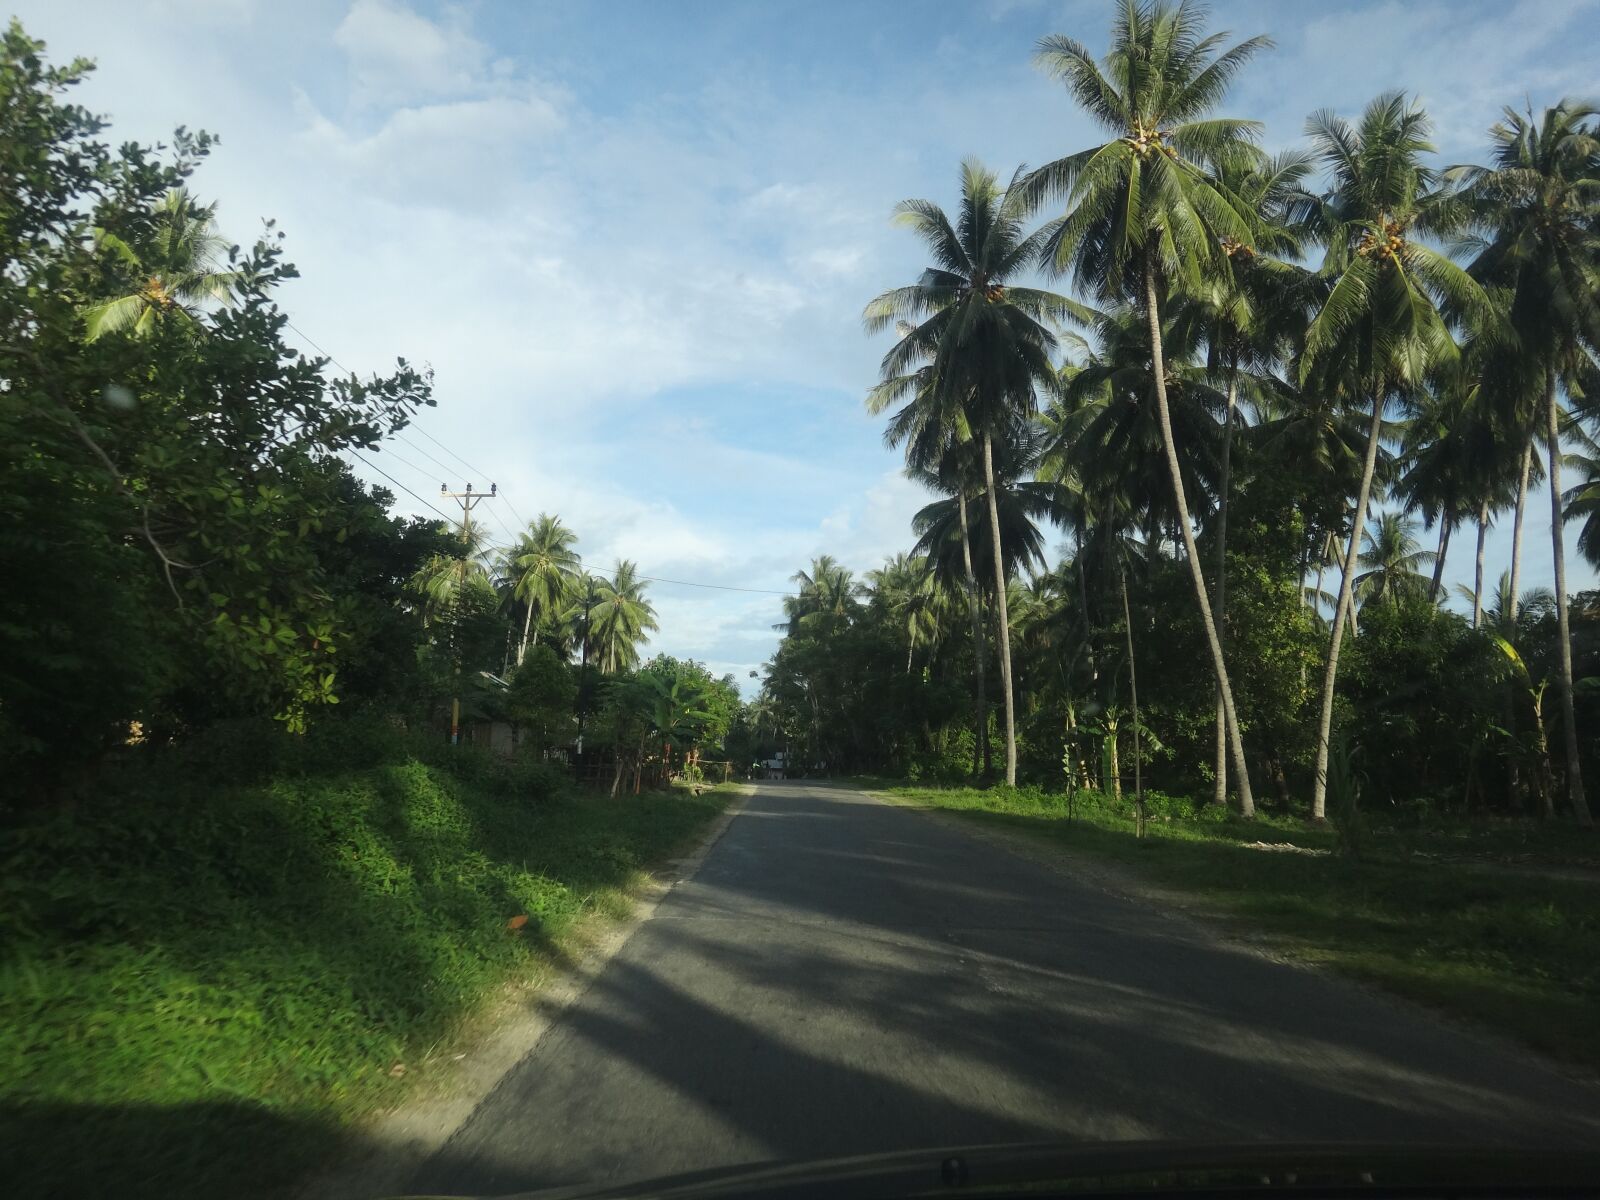 Sony DSC-TX20 sample photo. Coconut, tree, road photography